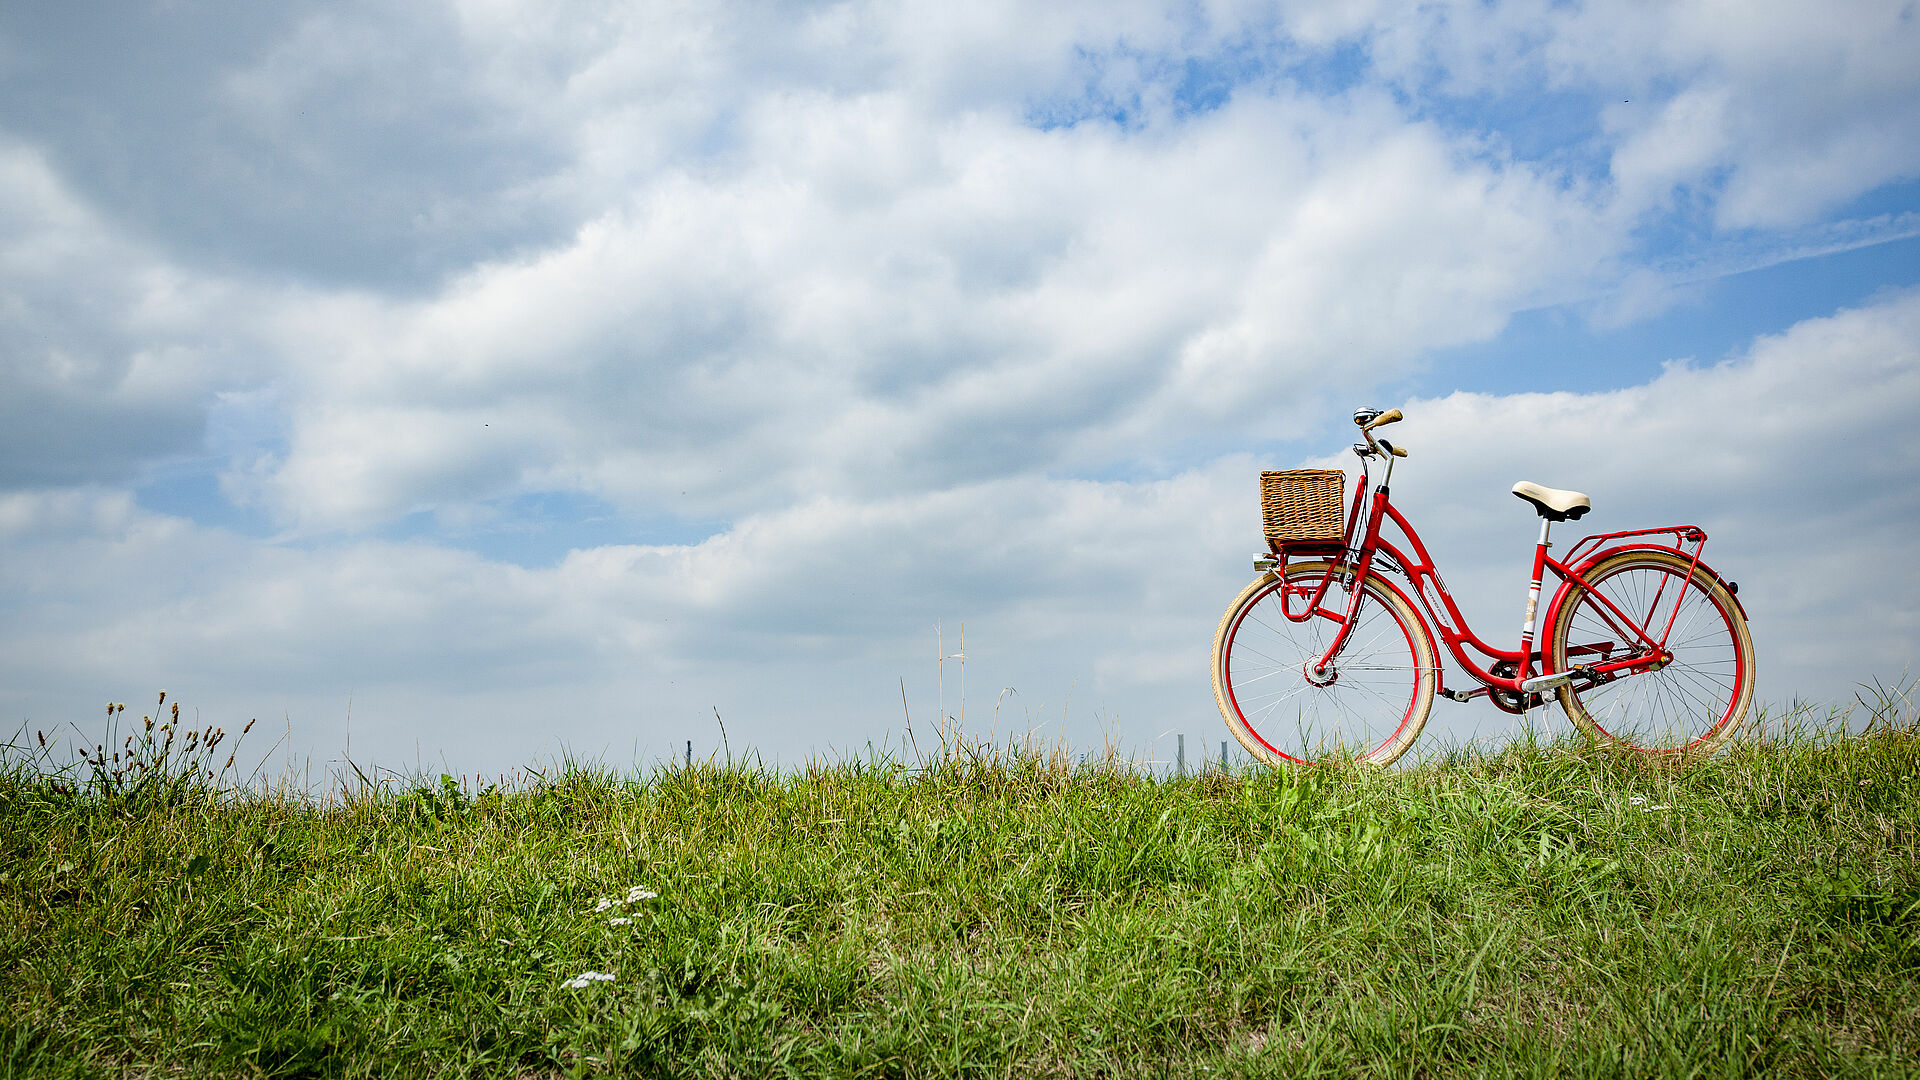 Ein rotes Fahrrad auf der grünen Wiese des Deichs. Im Hintergrund blauer Himmel.